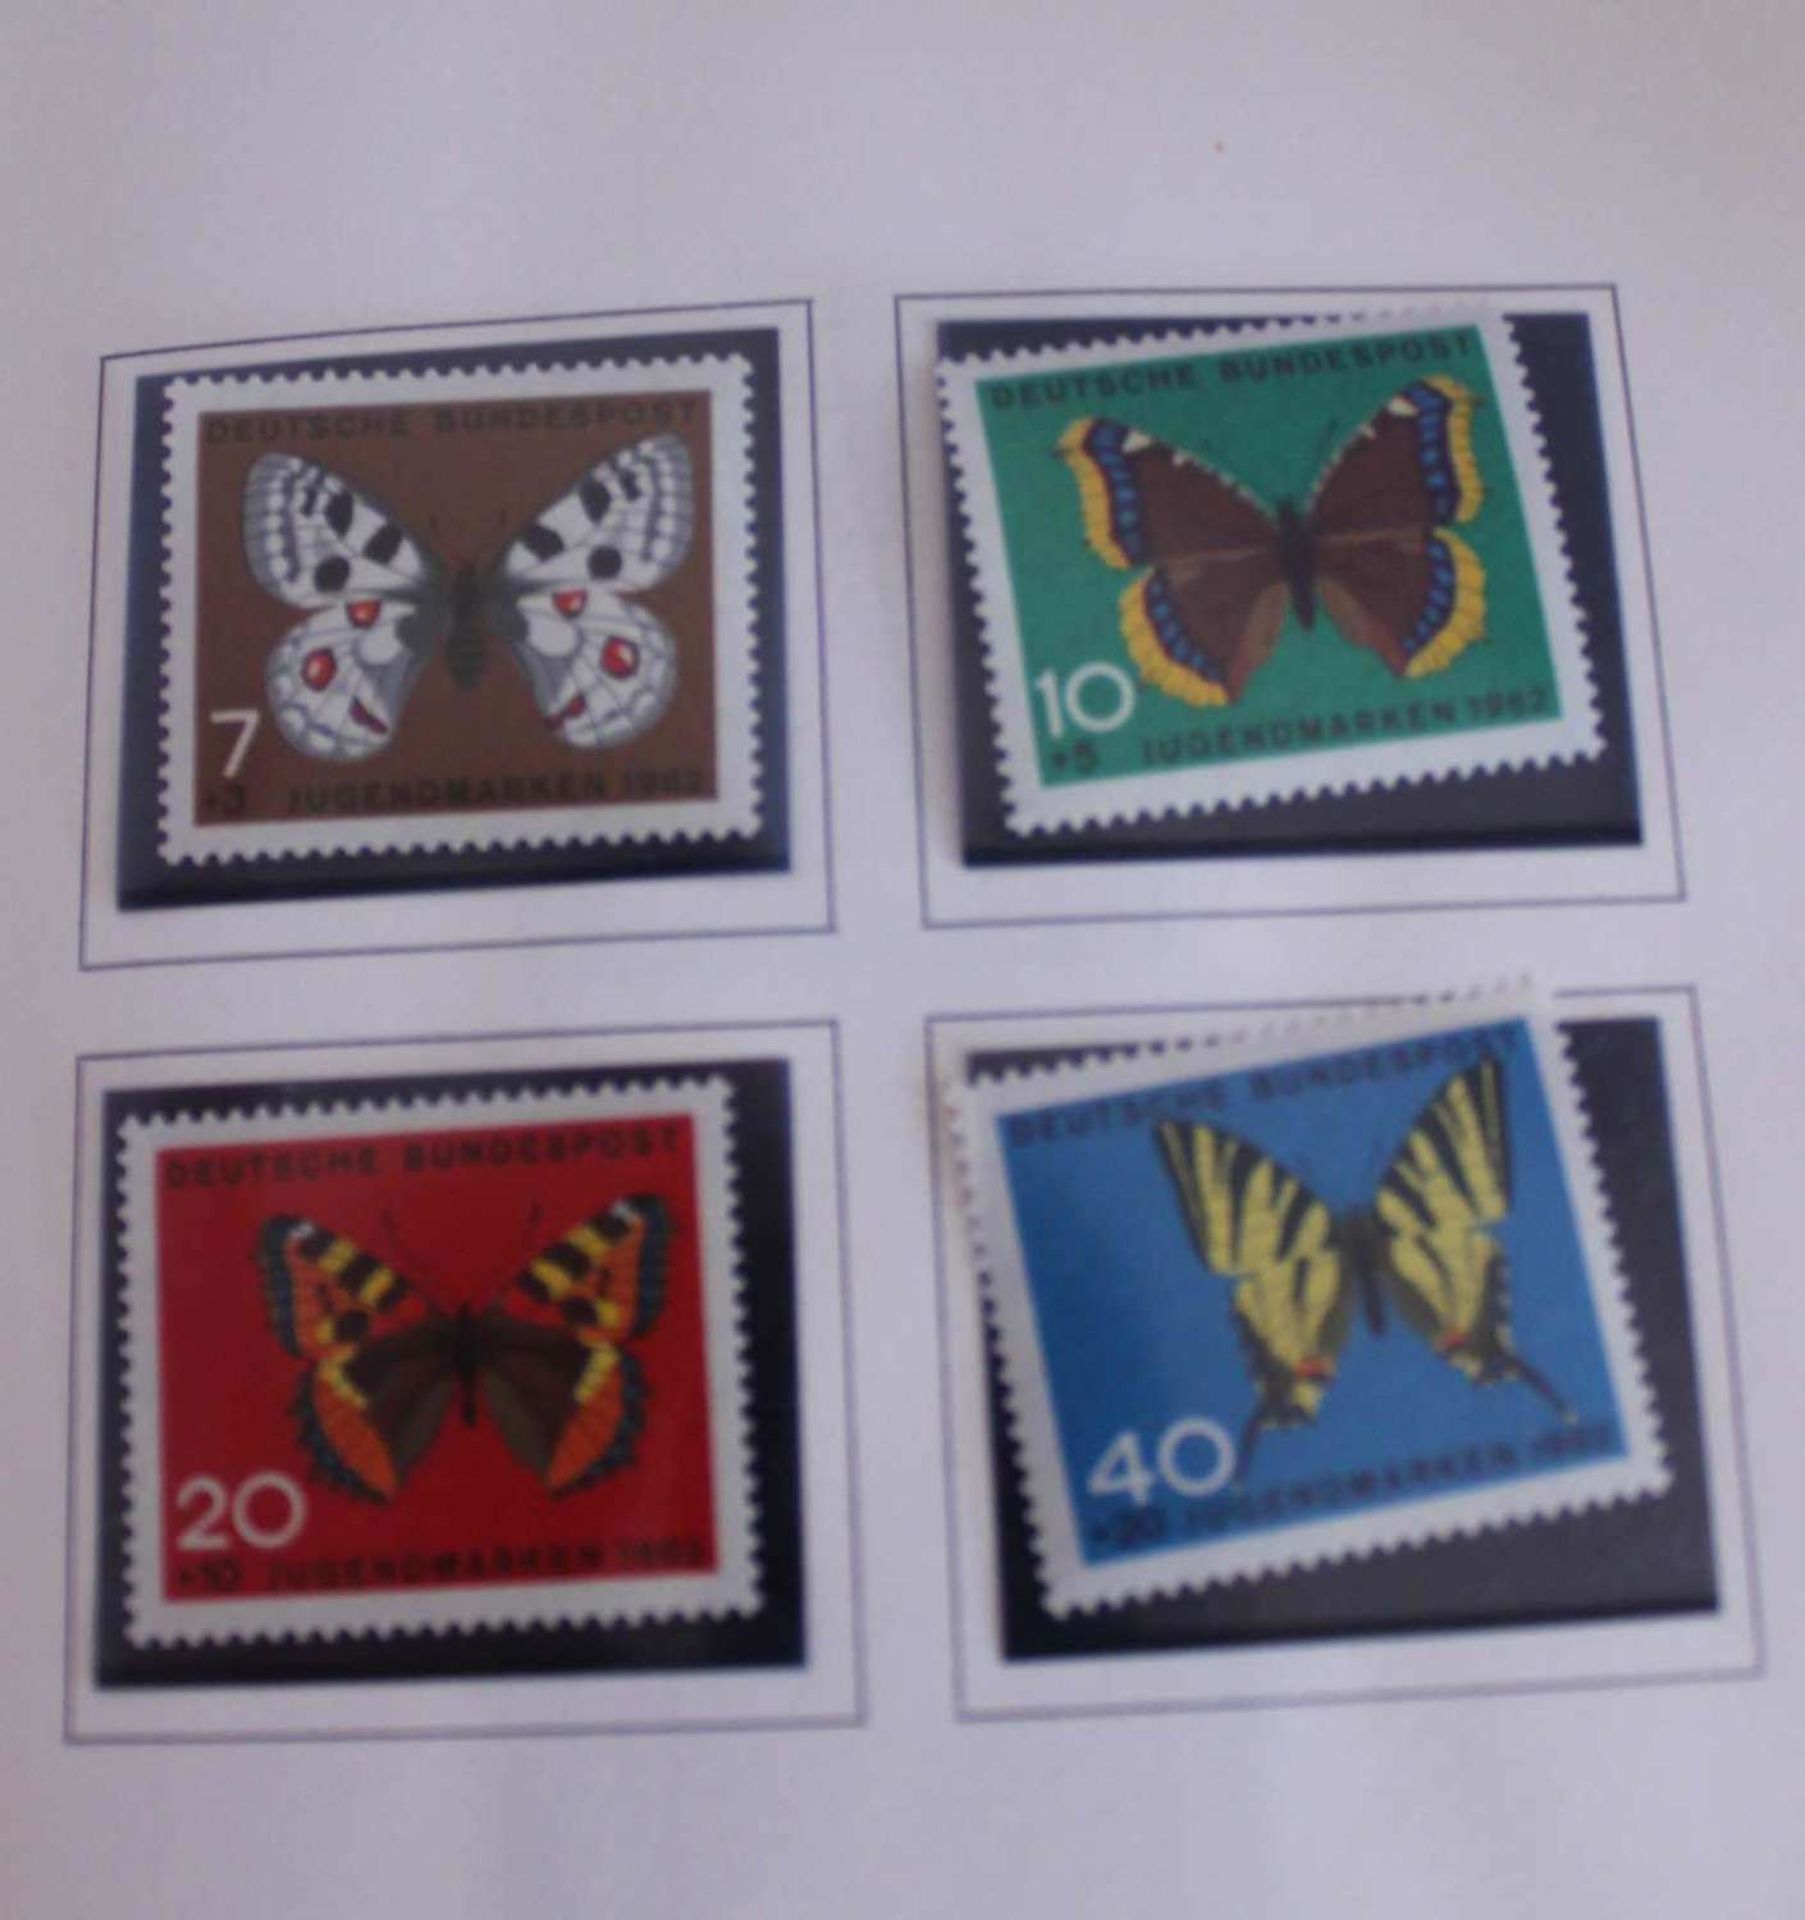 Deutsche Bundespost, special postage stamp promotion Postsparkasse 1964, special postage stamps 1962 - Bild 3 aus 3